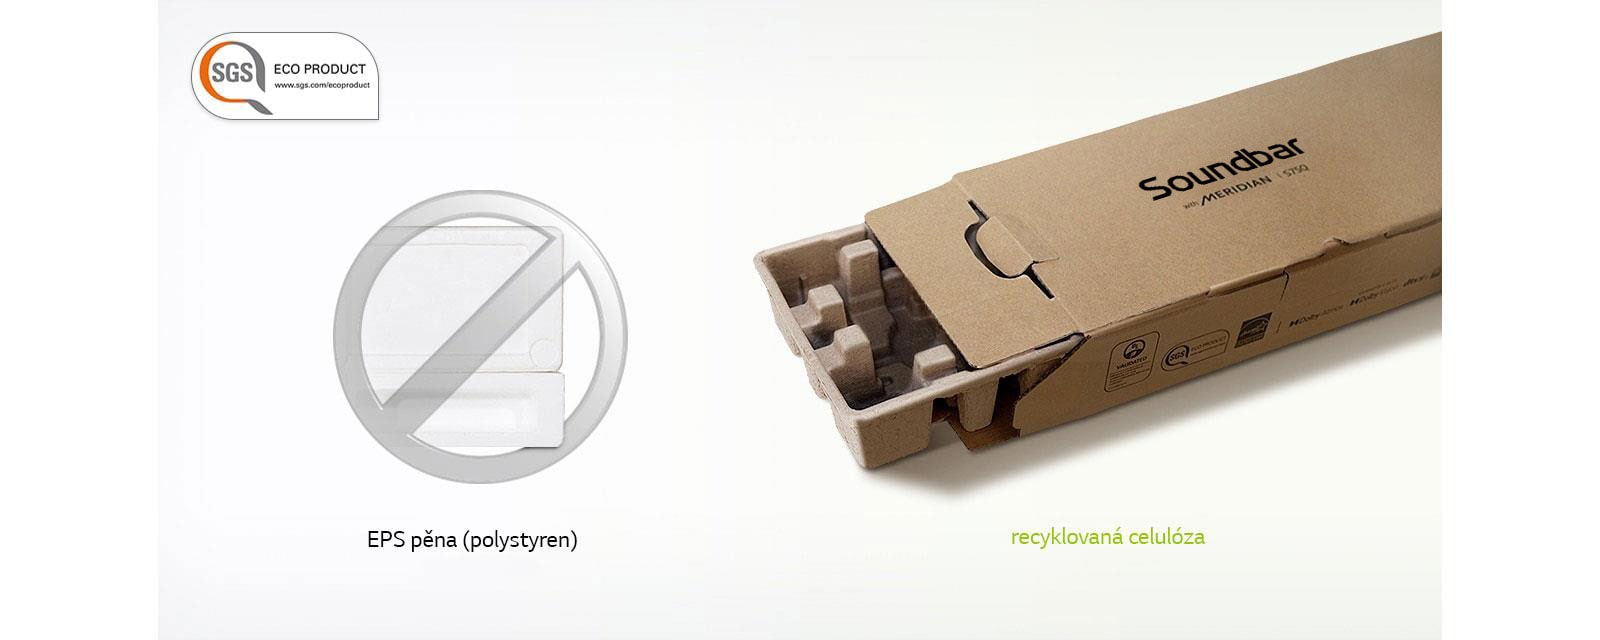 V levém horním rohu se nachází logo SGS ECO PRODUCT. Přes obrázek polystyrenu je šedá značka „Zakázáno“ a vpravo je krabice používaná k balení.